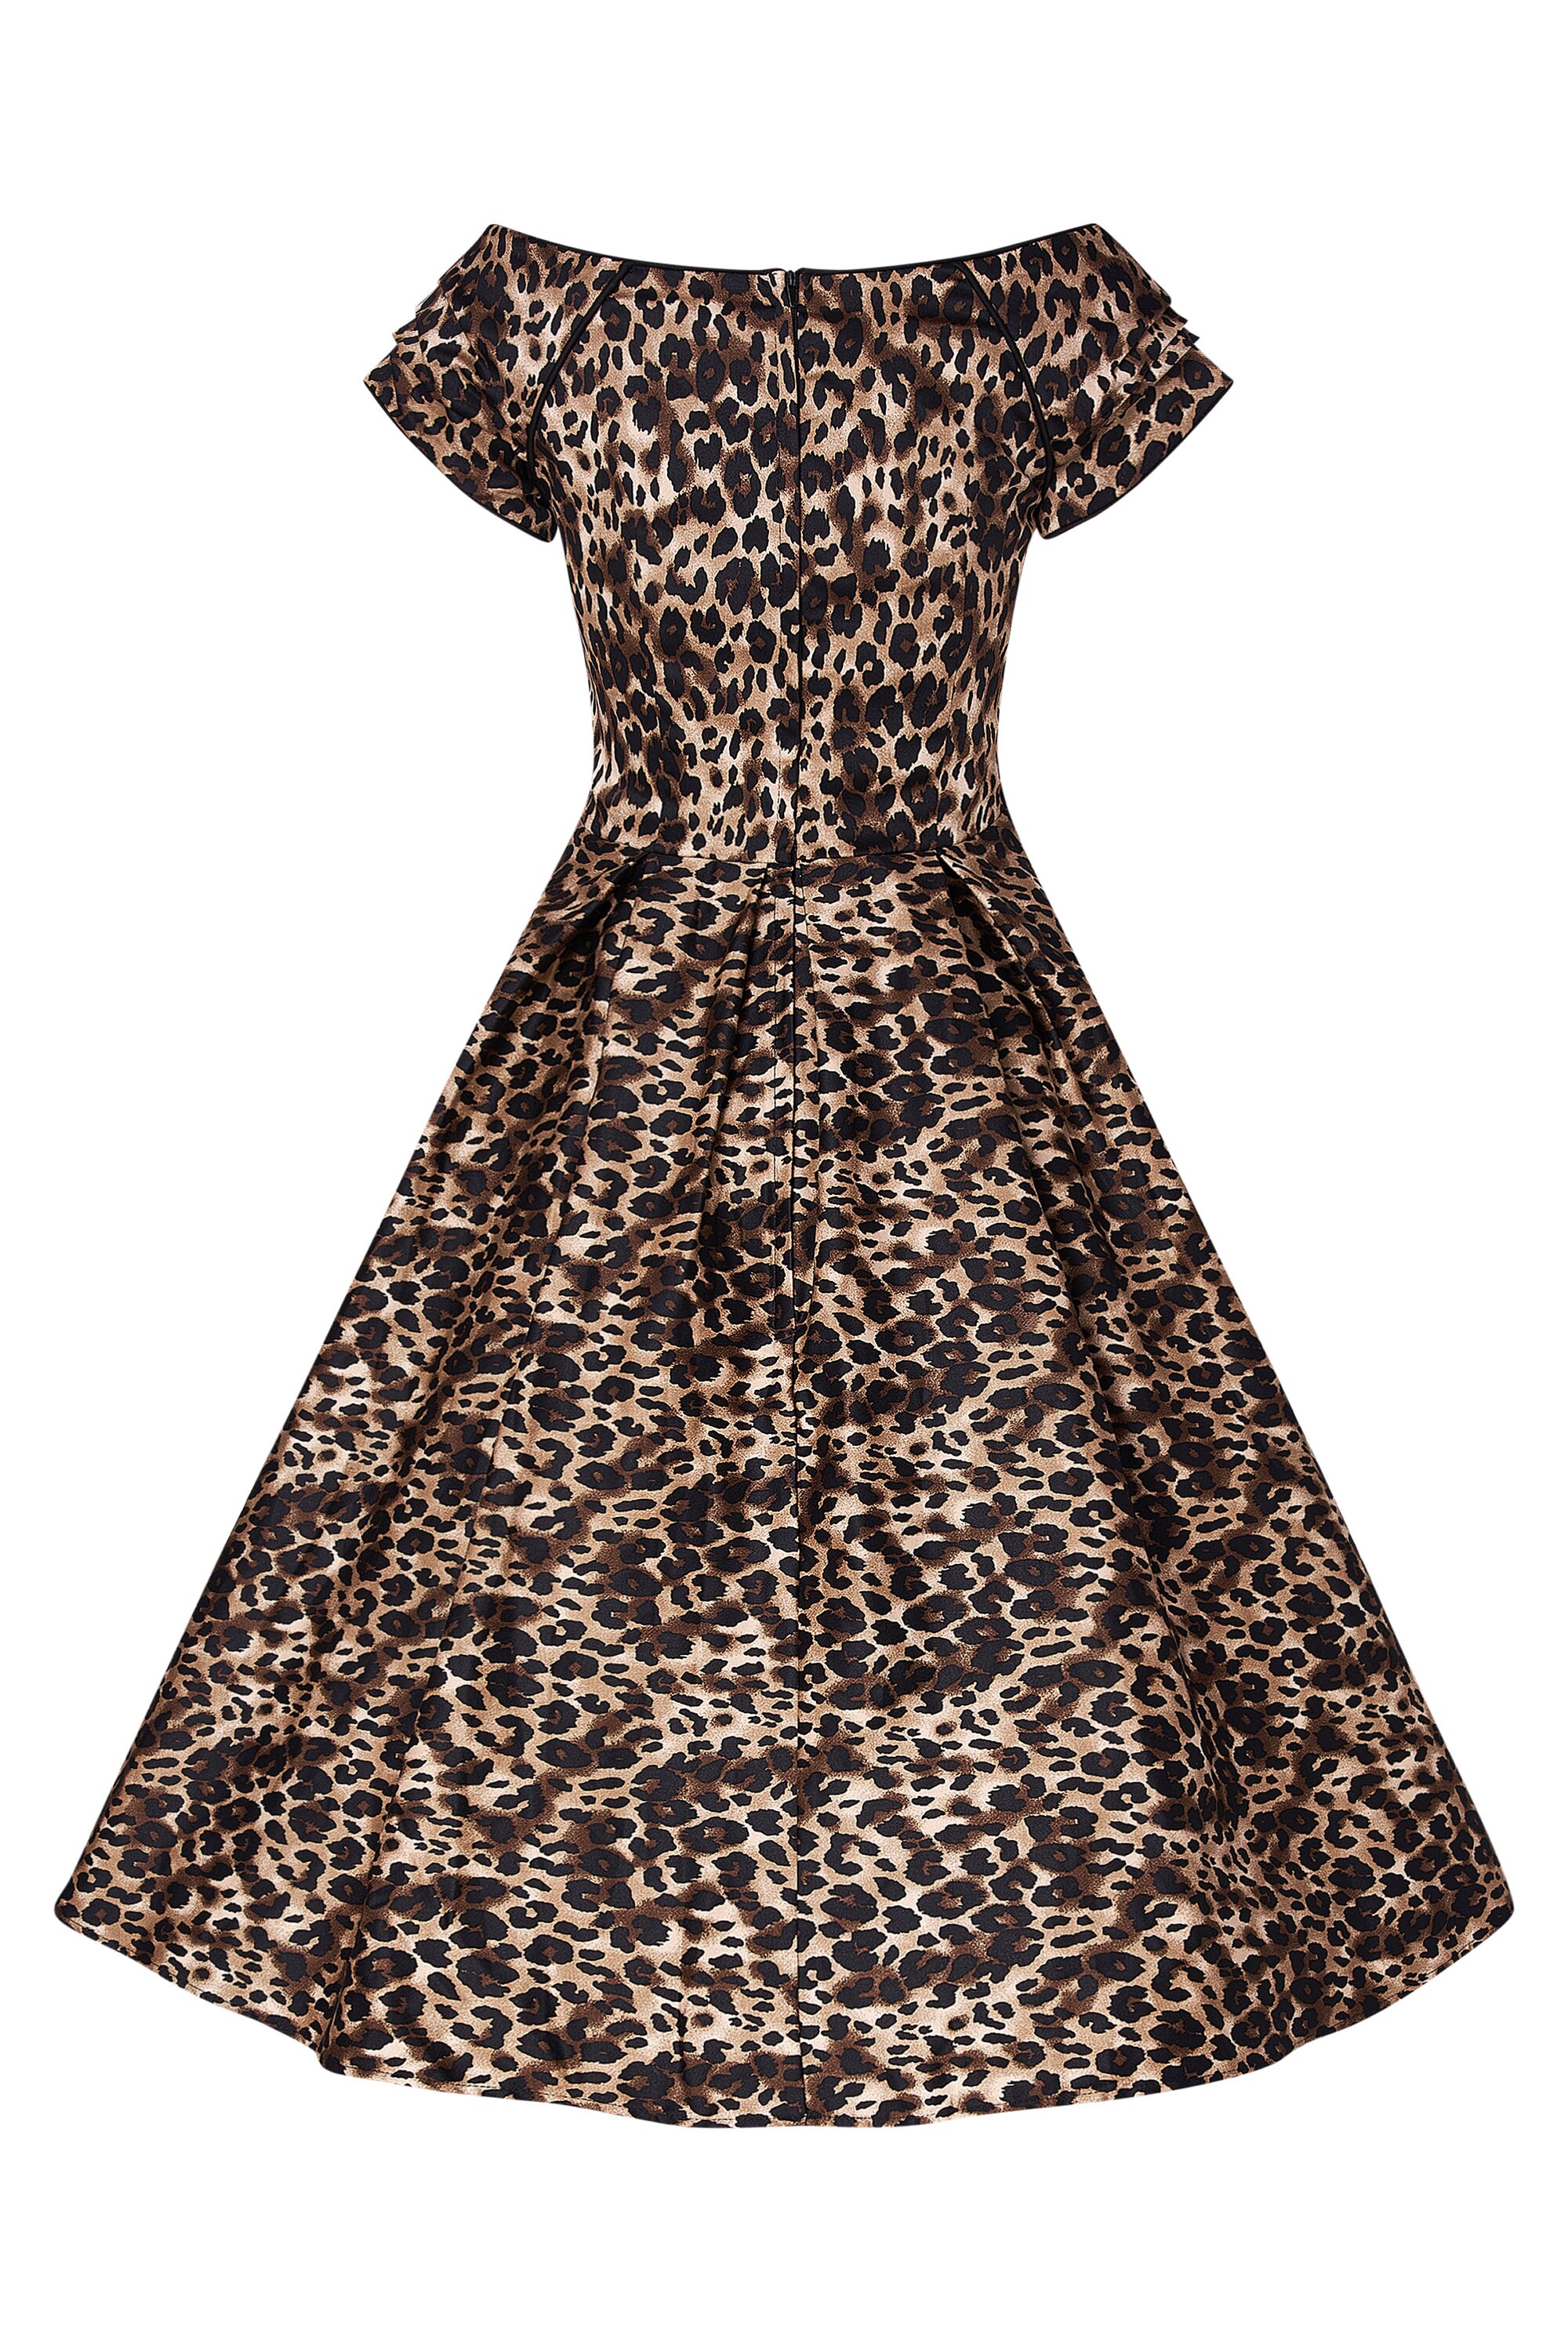 Leopard Print off Shoulder Dress | Etsy